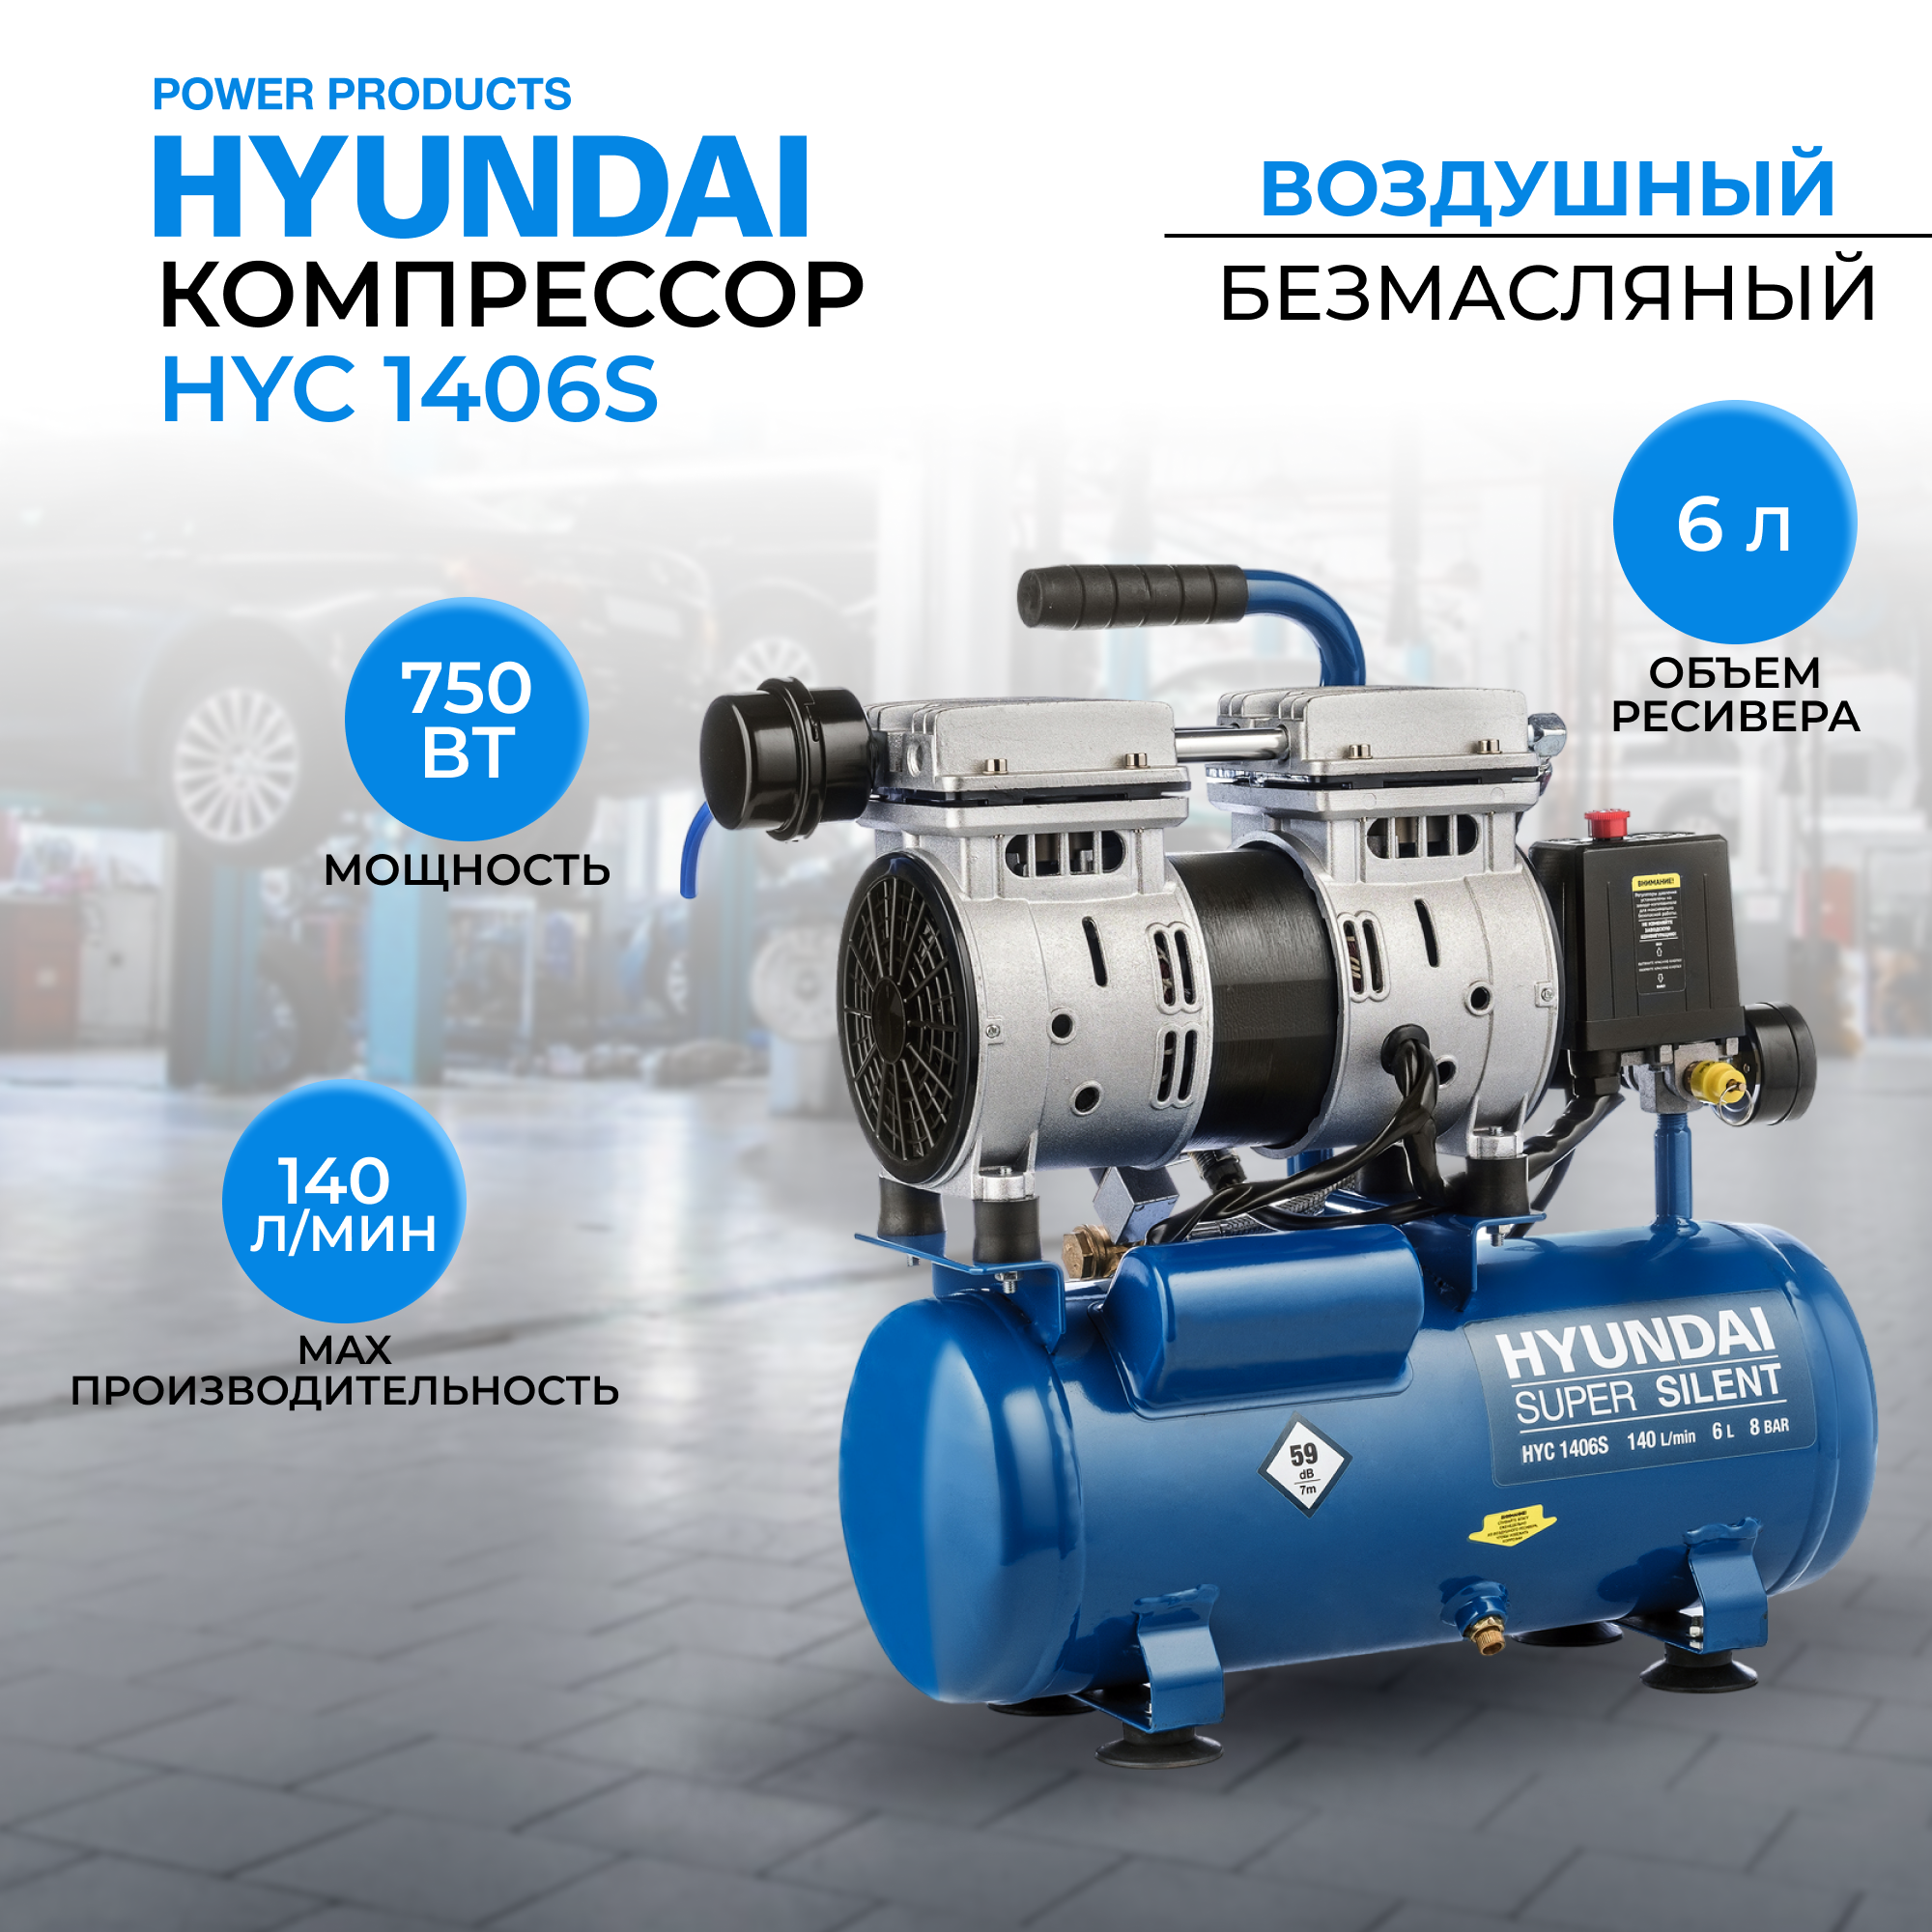 Воздушный поршневой компрессор Hyundai HYC 1406S безмасляный (140 л/мин, 750Вт, 8 бар) компрессор поршневой hyundai hyc 40250lms 50 л 400 л мин